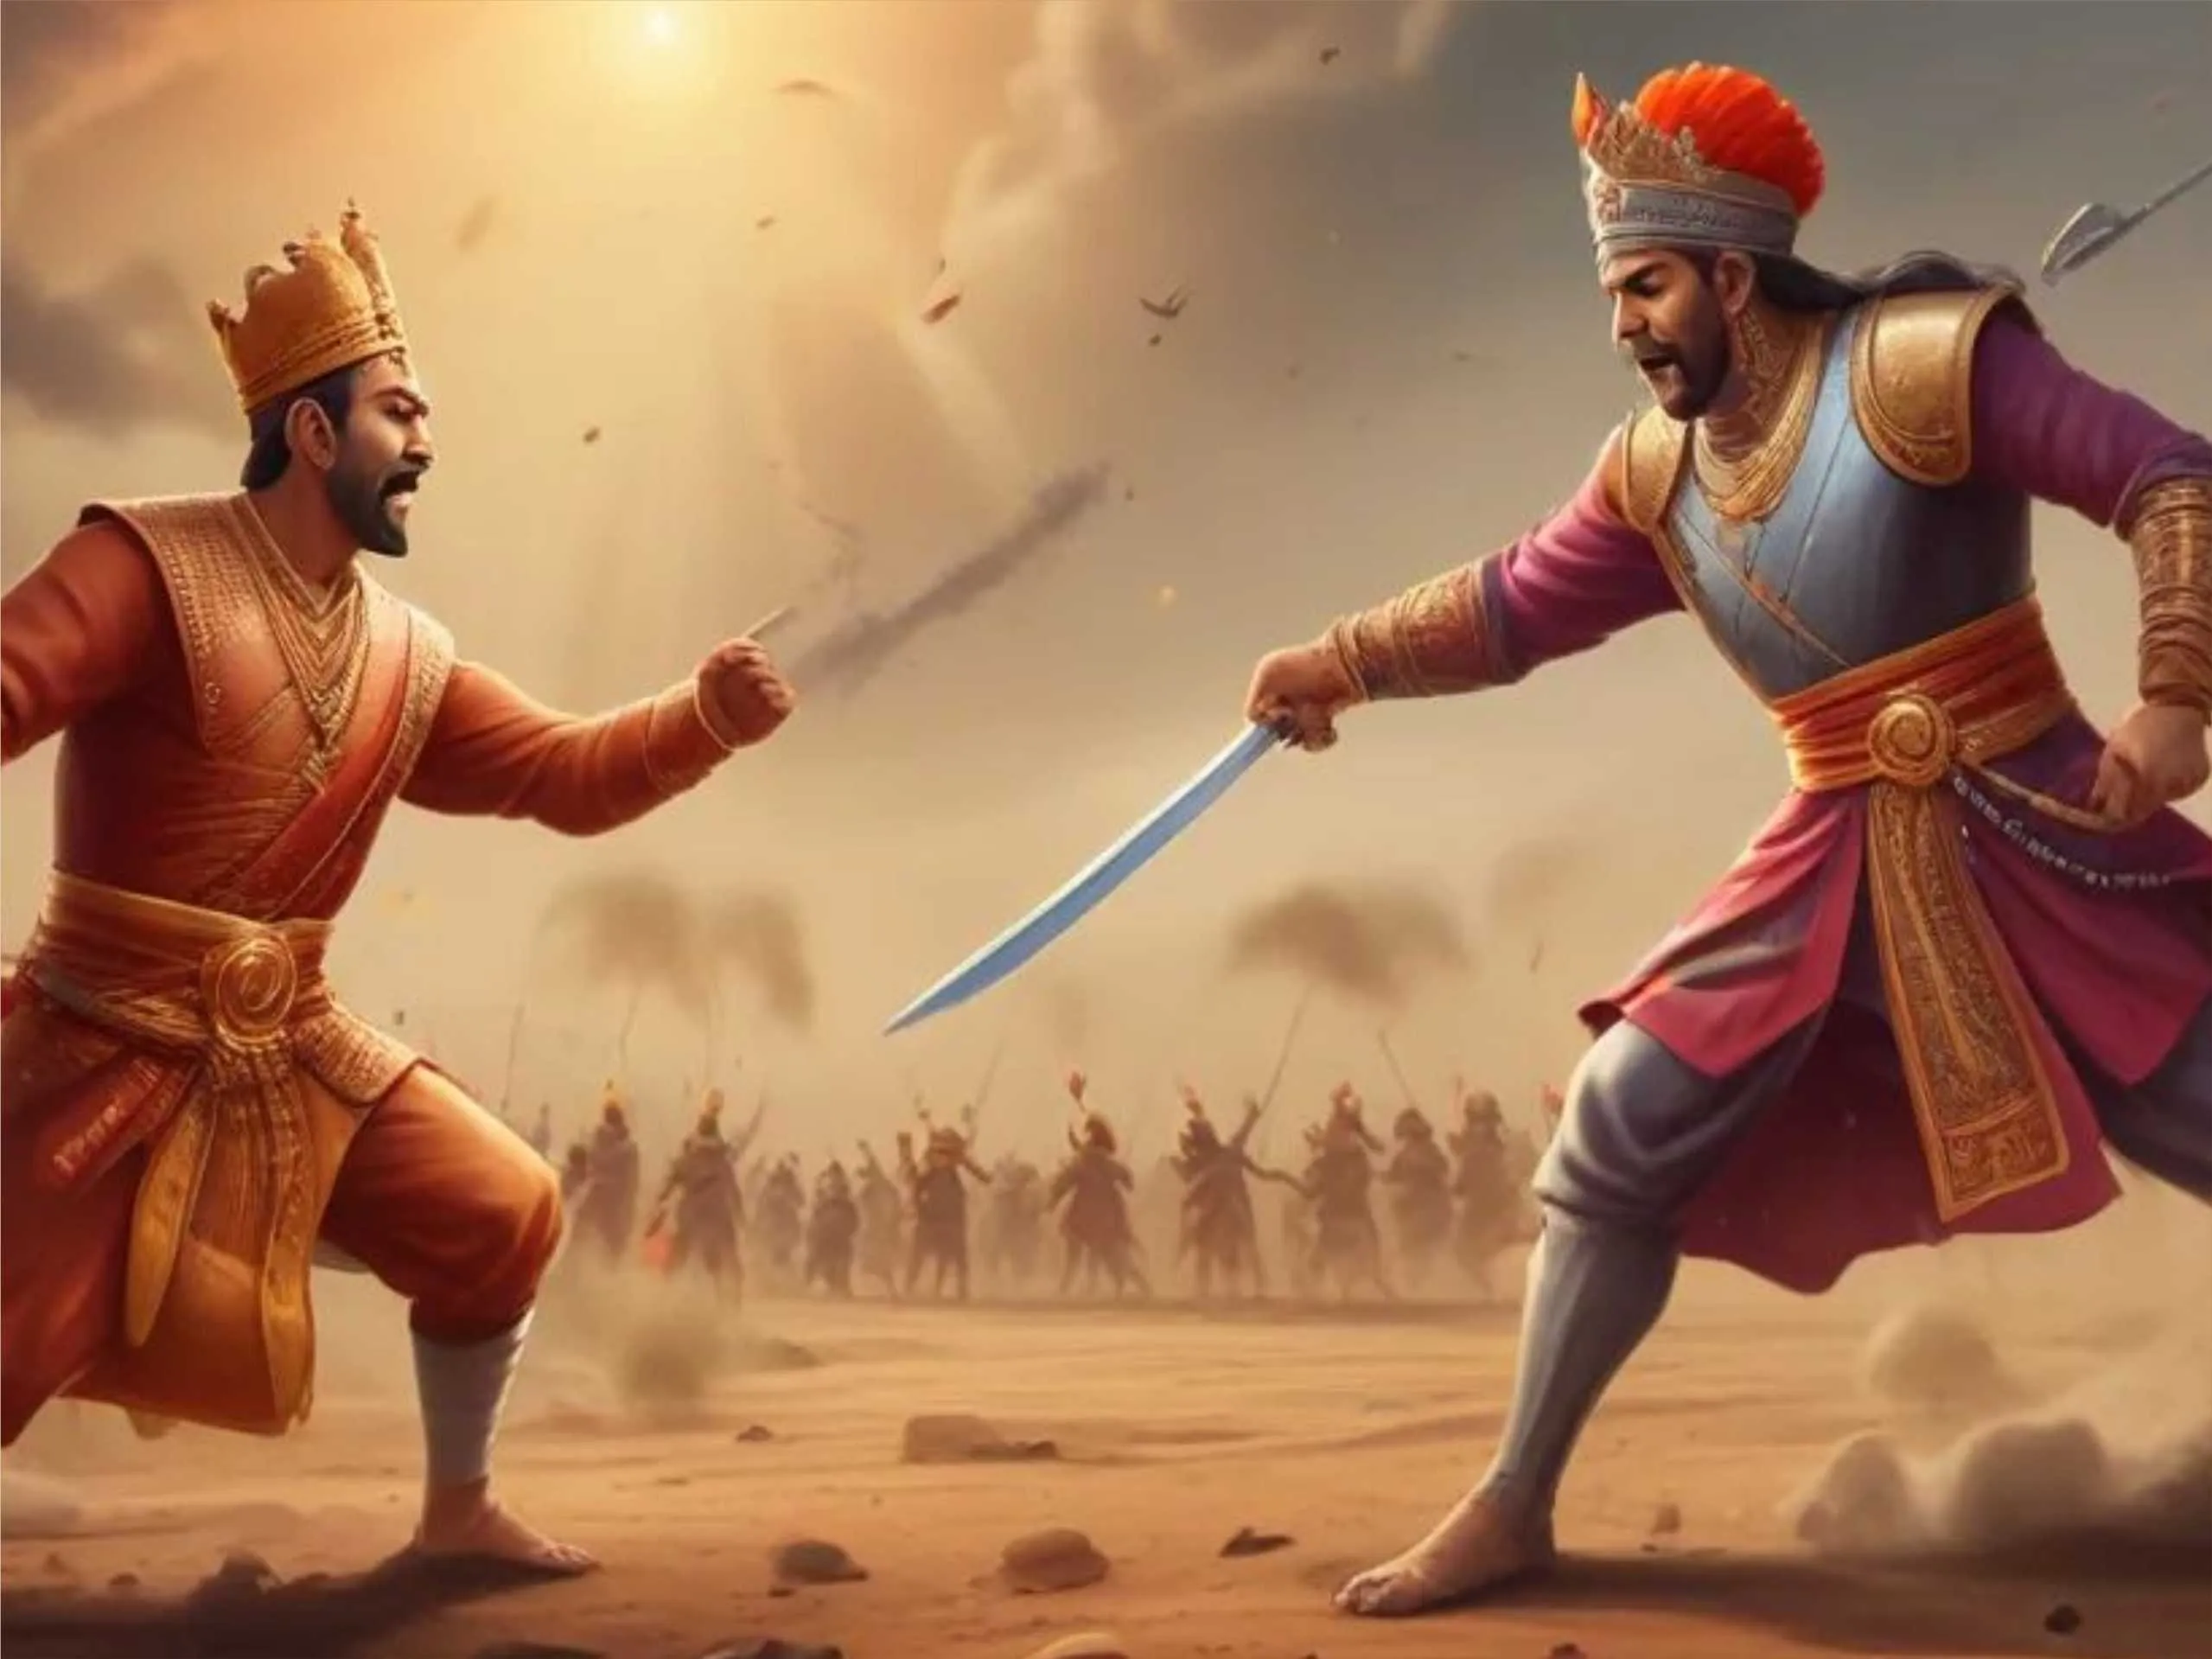 Two kings fighting in battlefield cartoon image